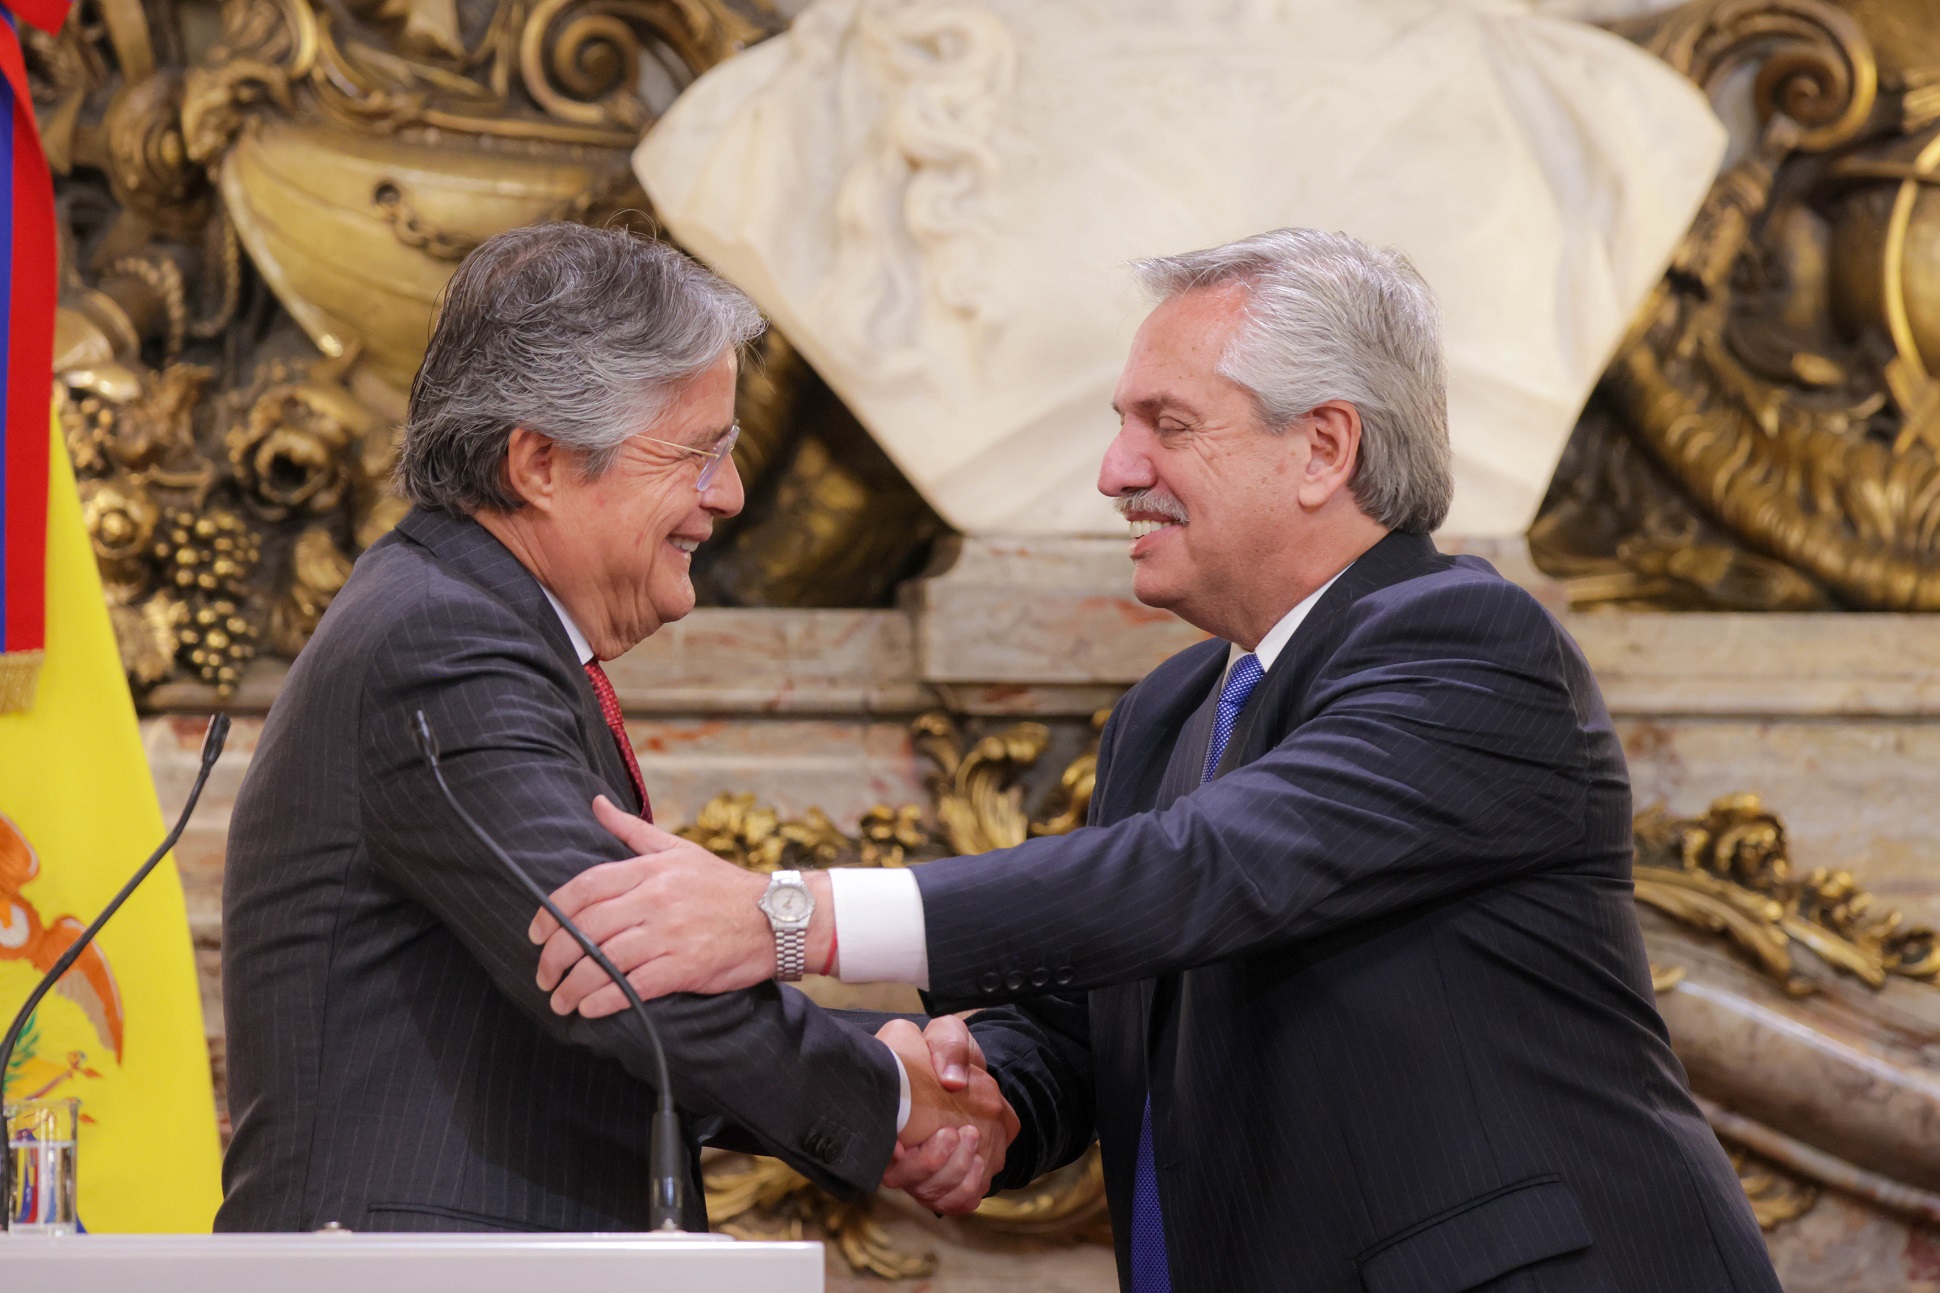 Los presidentes Fernández y Lasso acordaron lanzar un “programa de fraternidad en América Latina y el Caribe” a través de la CELAC